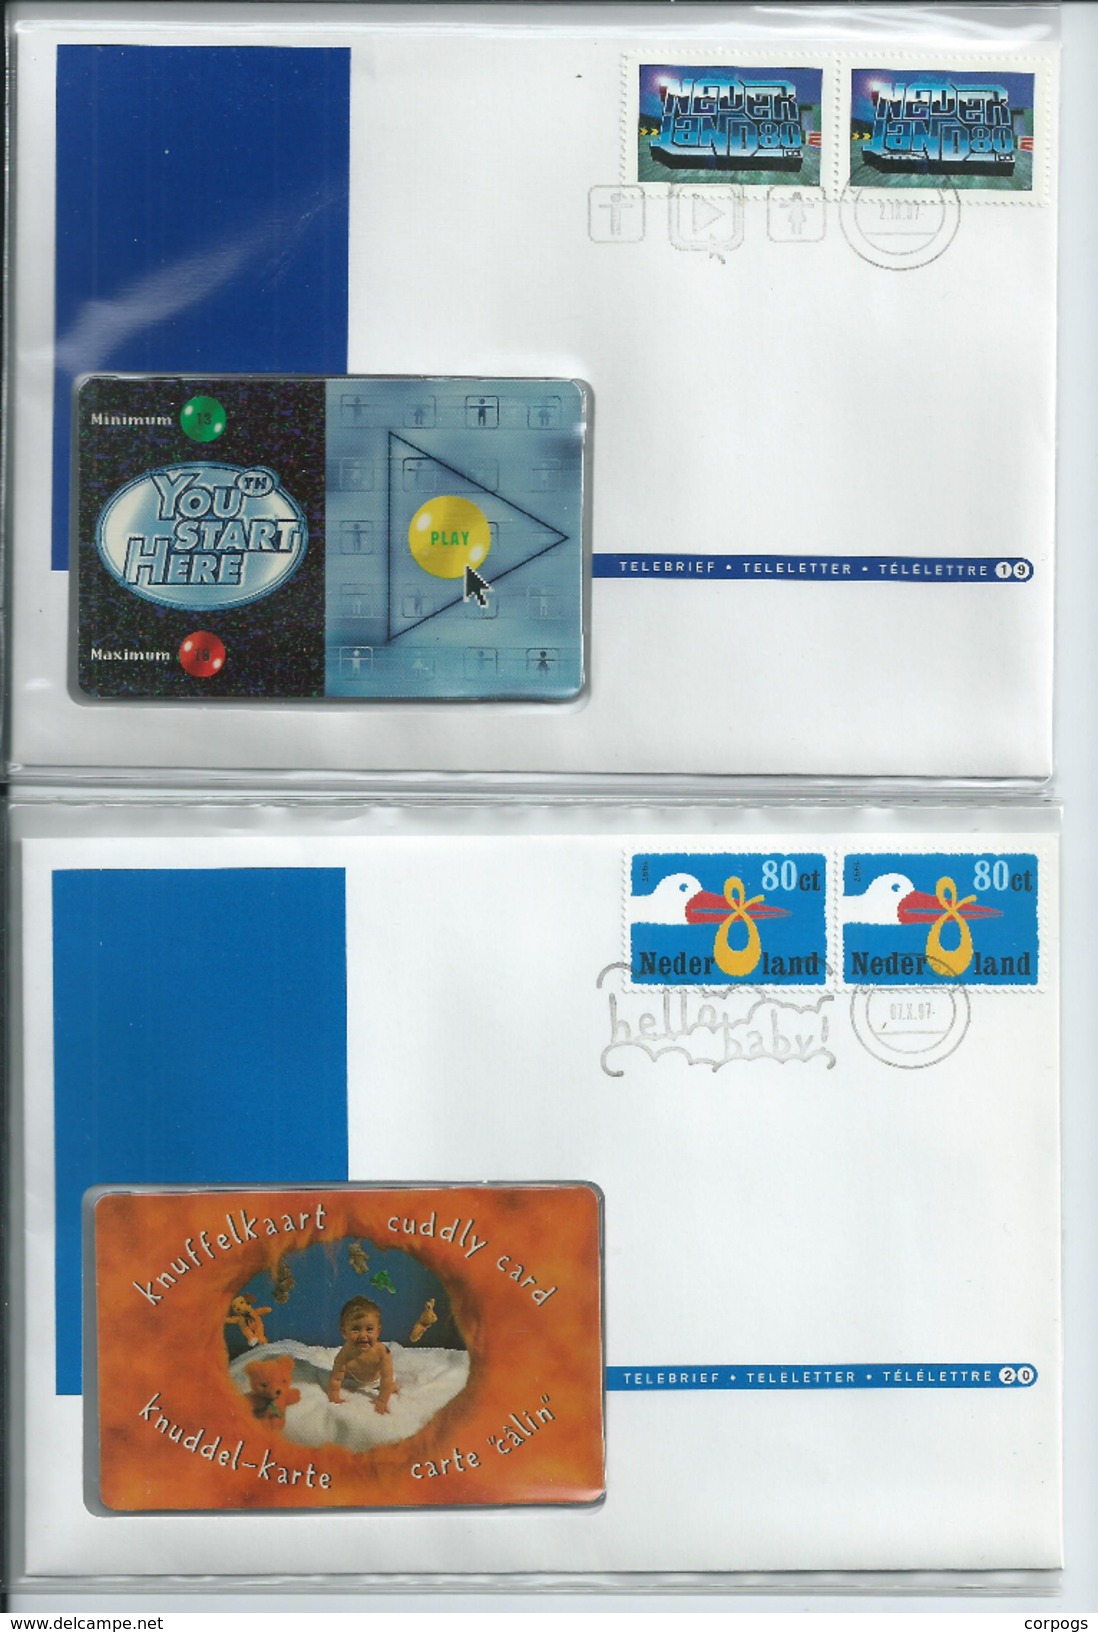 Complete set Telebrieven 1 / 36 ongebruikte telefoonkaart + zegel phonecard on letter (not Used) + stamp canceld